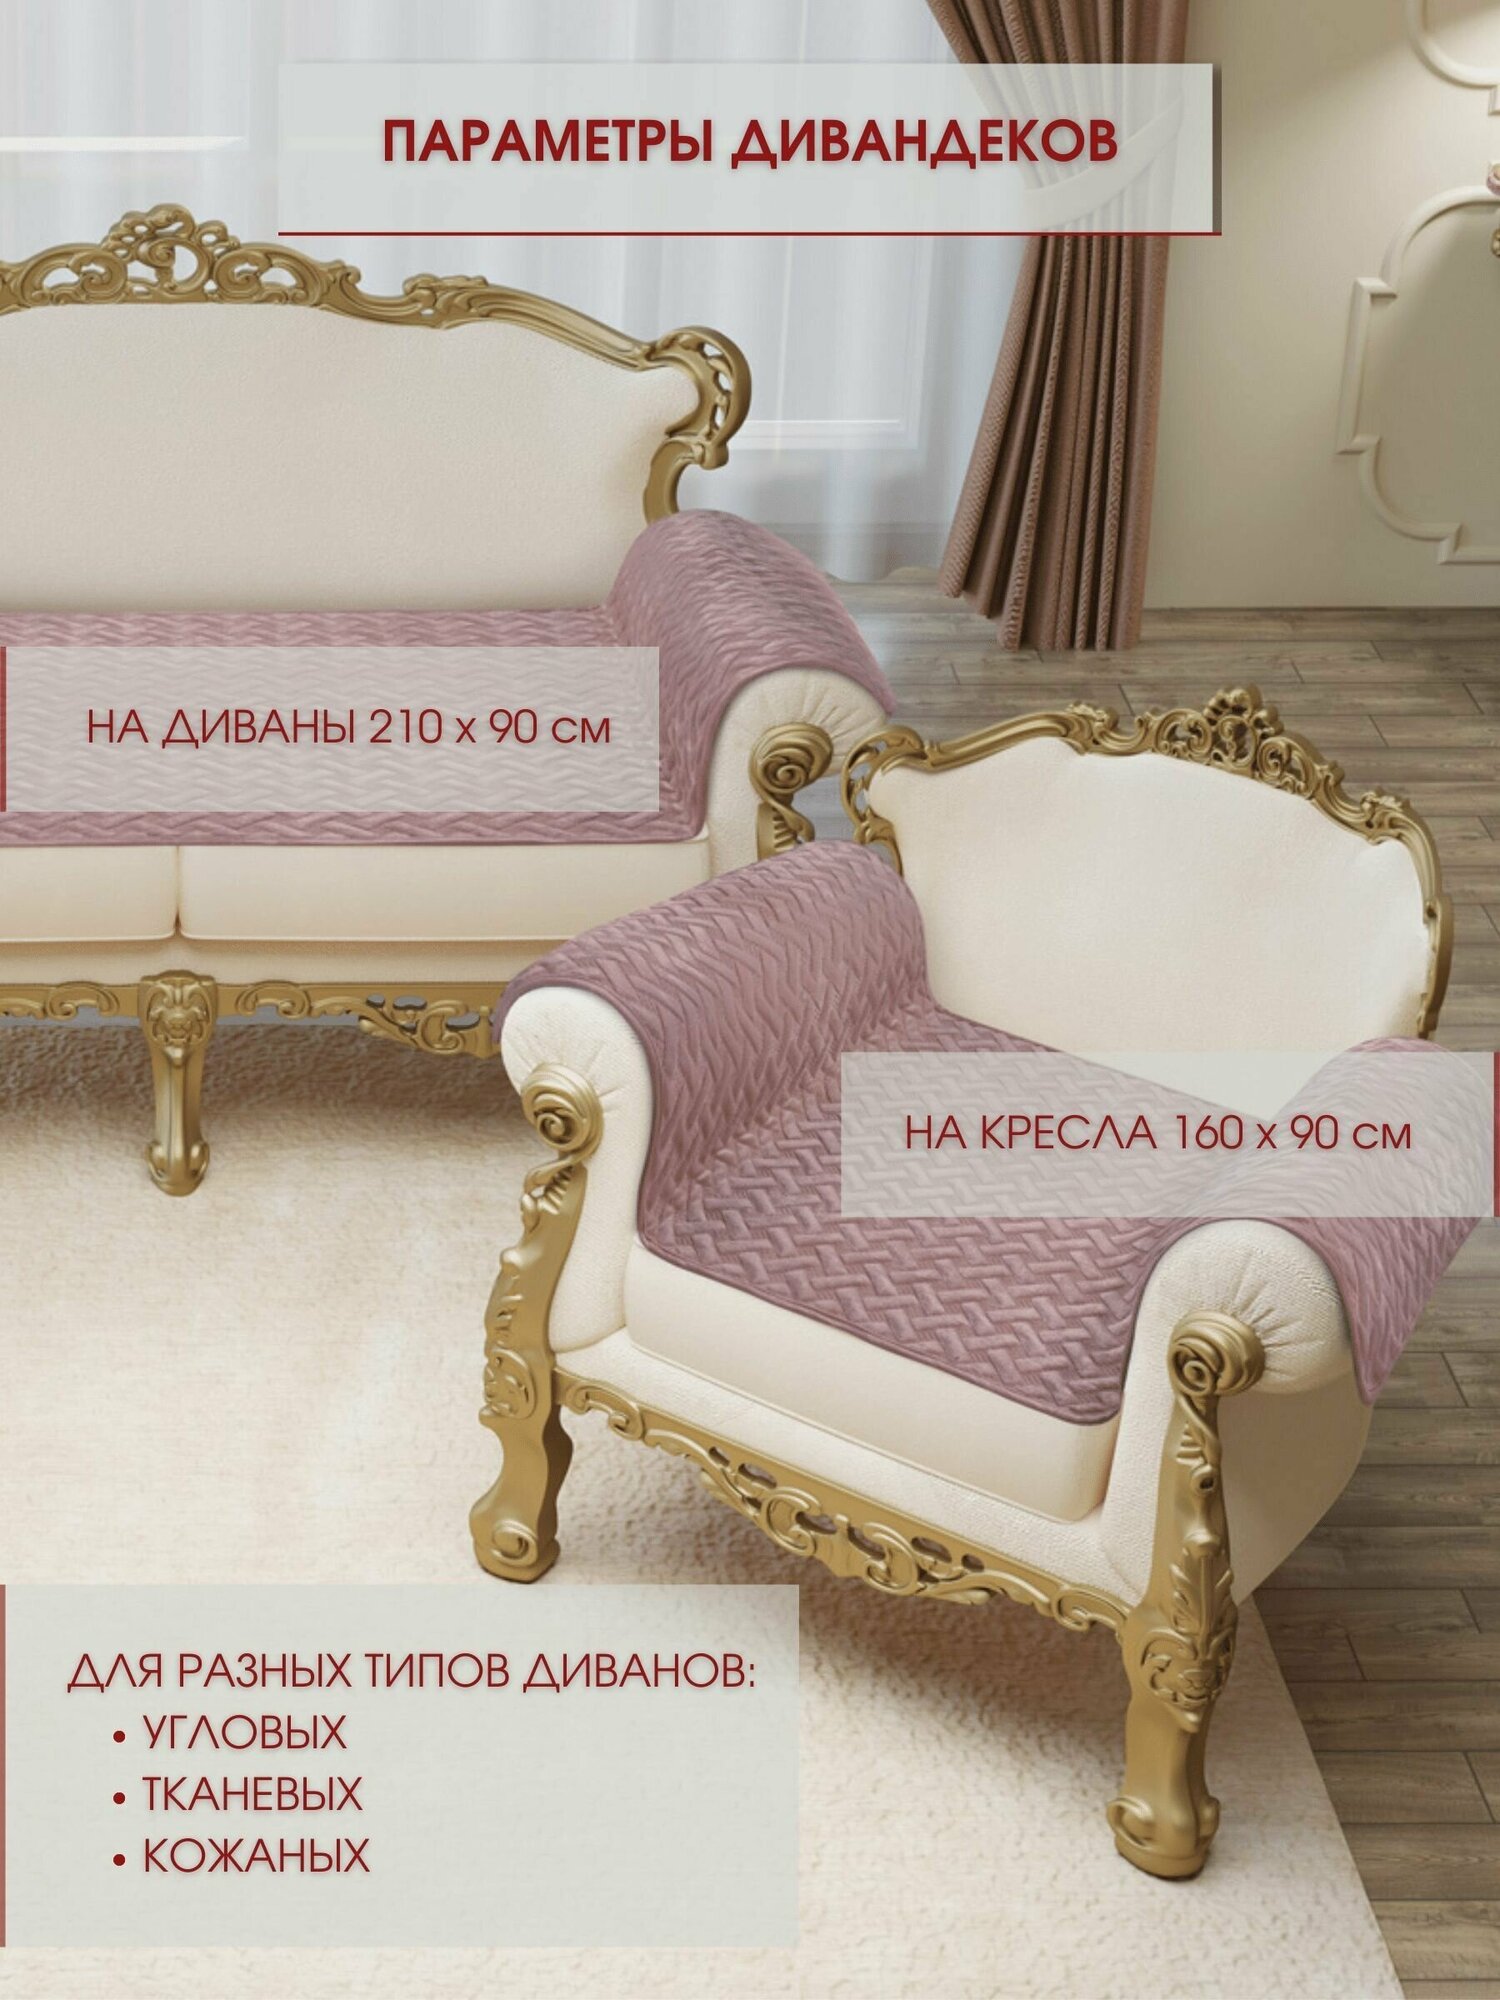 Набор накидок на диван и кресла 1+2 / Набор чехлов на мебель / дивандек антискользящий Marianna GRETA LUX 88